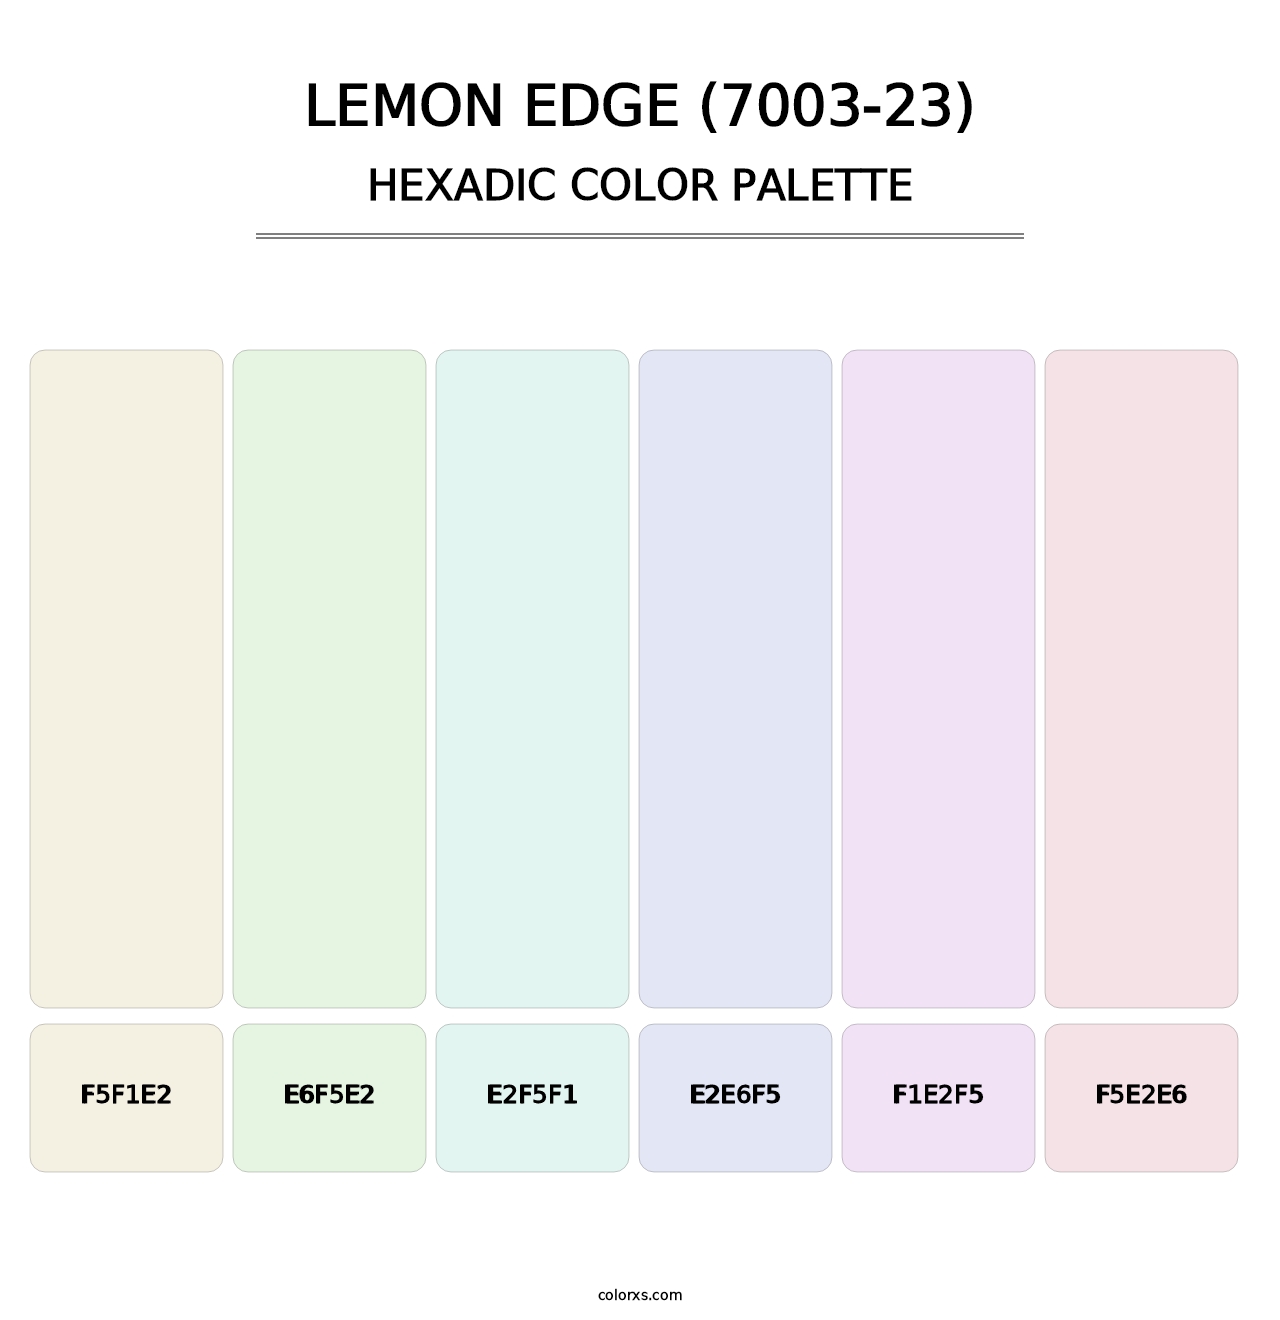 Lemon Edge (7003-23) - Hexadic Color Palette